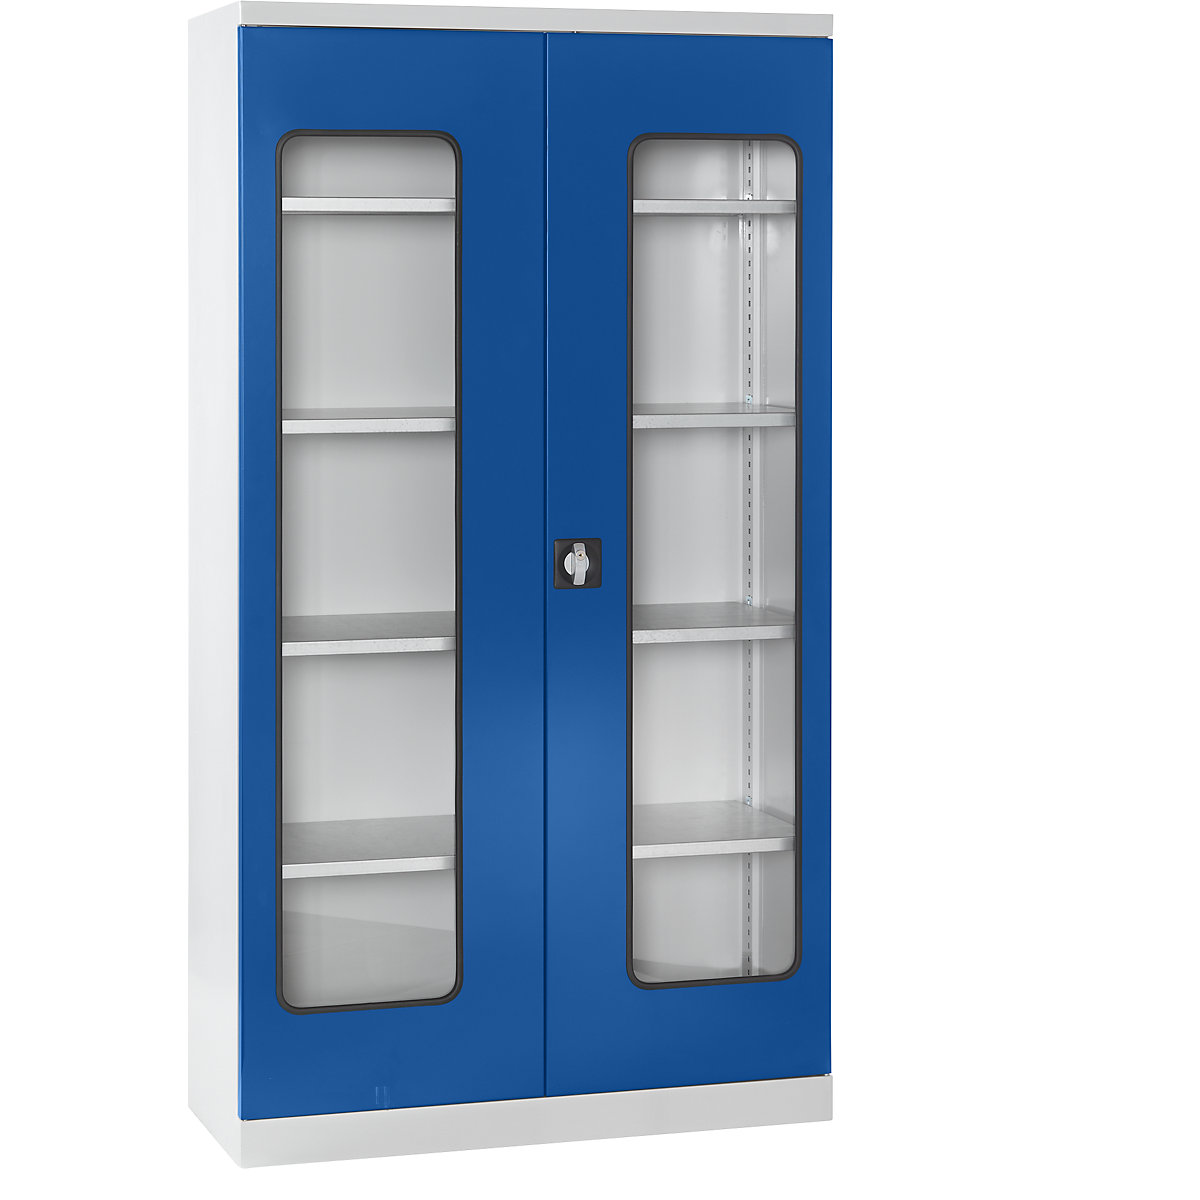 Materiaalkast – eurokraft pro, diepte 450 mm, 4 legborden en deuren met zichtvenster, deuren blauw-17